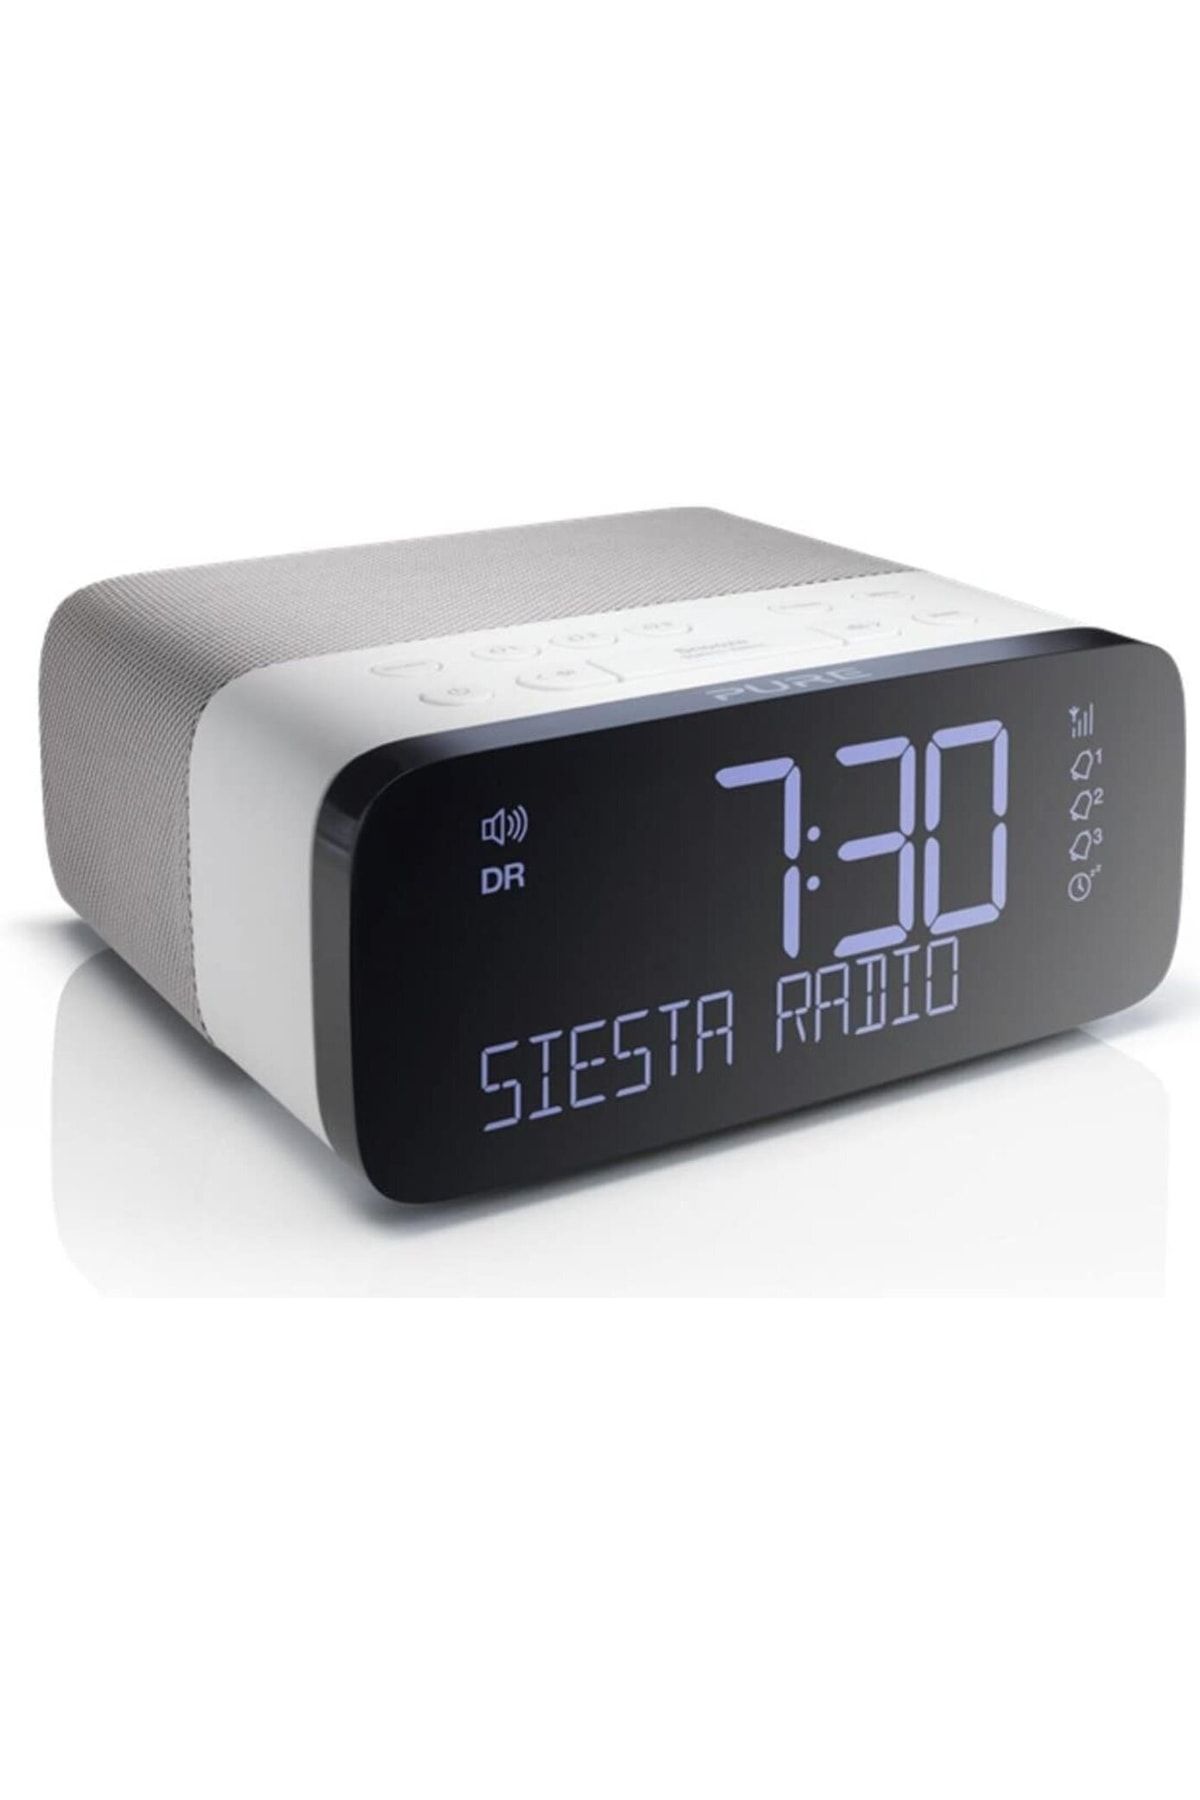 Pure Saf Siesta Rise Radyo Çalar Saat Dab Ve Fm Radyo Çalar Saat, Usb Bağlantı Noktası, Uyku Zamanlayıcı